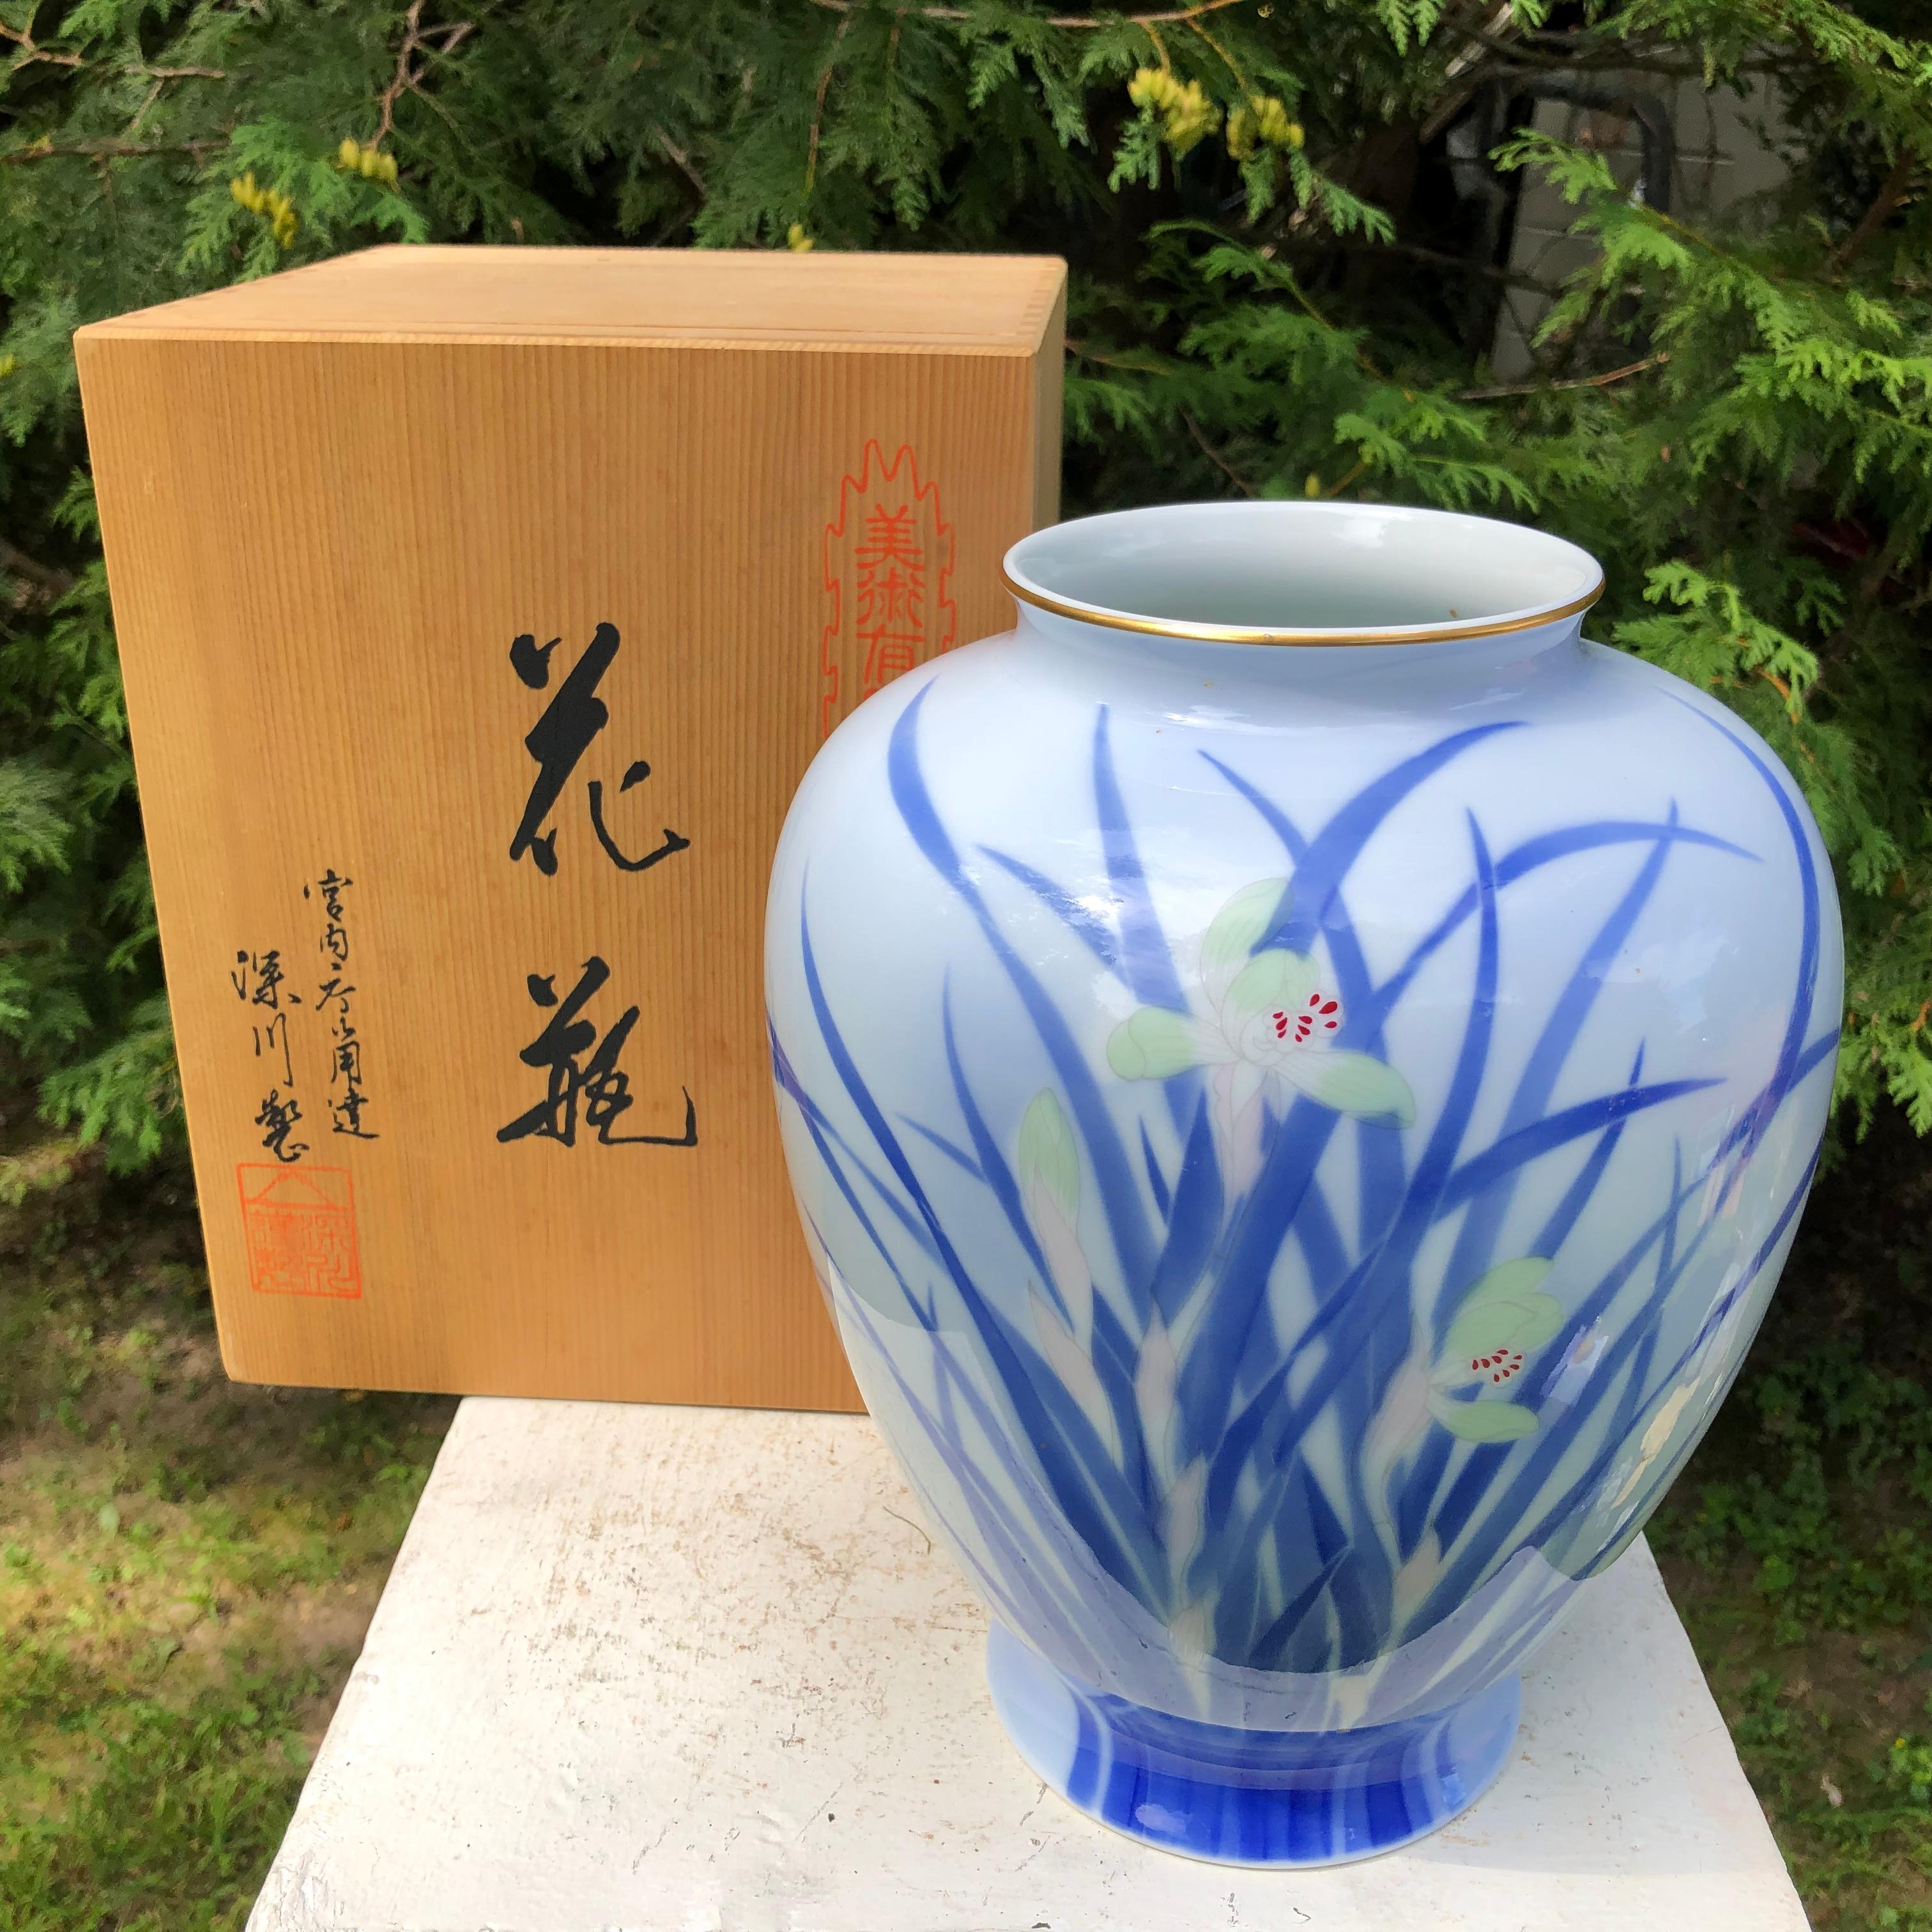 Taisho Japanese Big Antique Blue and White Iris Vase Hand Painted, Signed Box